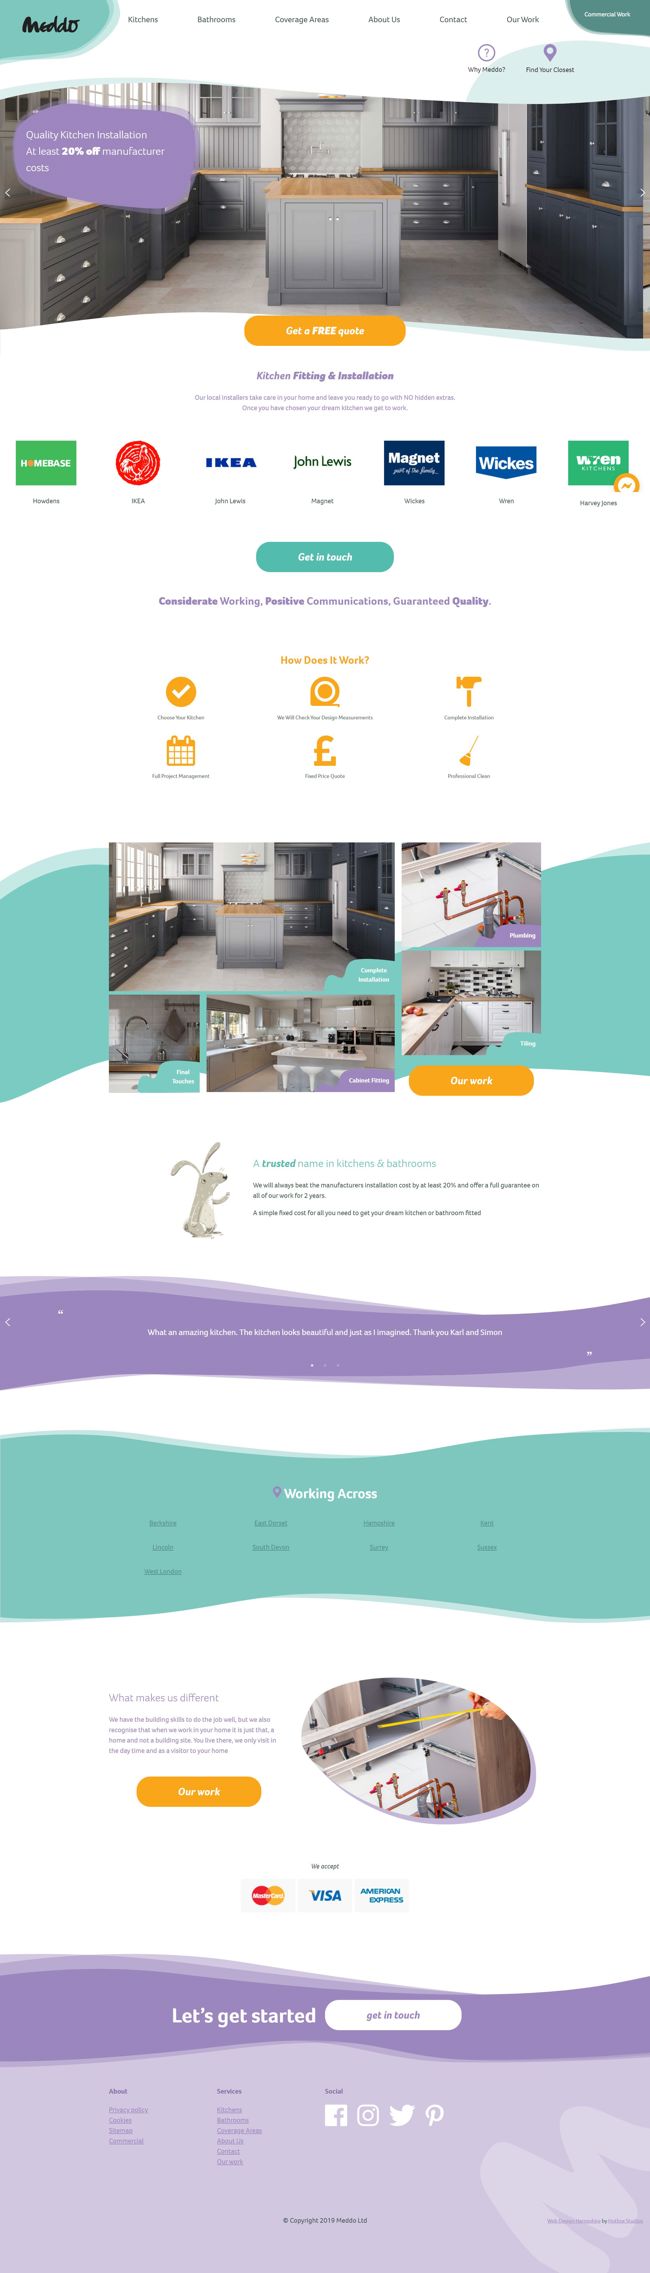 Meddo Wordpress Web Design SP002 Kitchen Fitting Installation